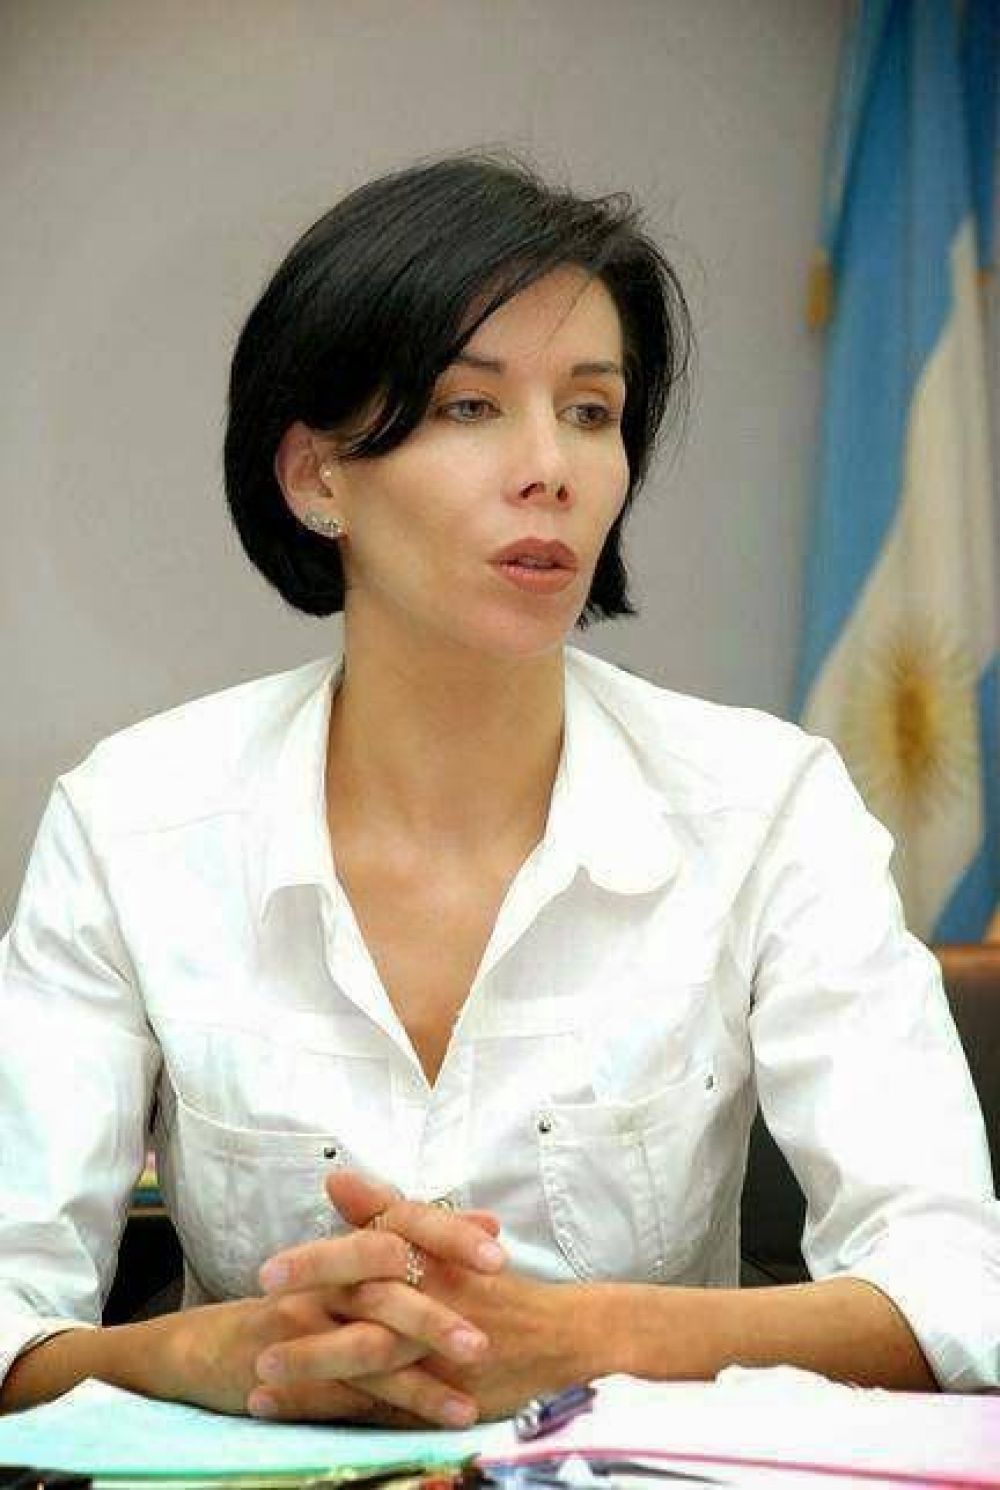 Declaraciones Juradas: La respuesta de Ivette Dousset ante la denuncia penal interpuesta en su contra 